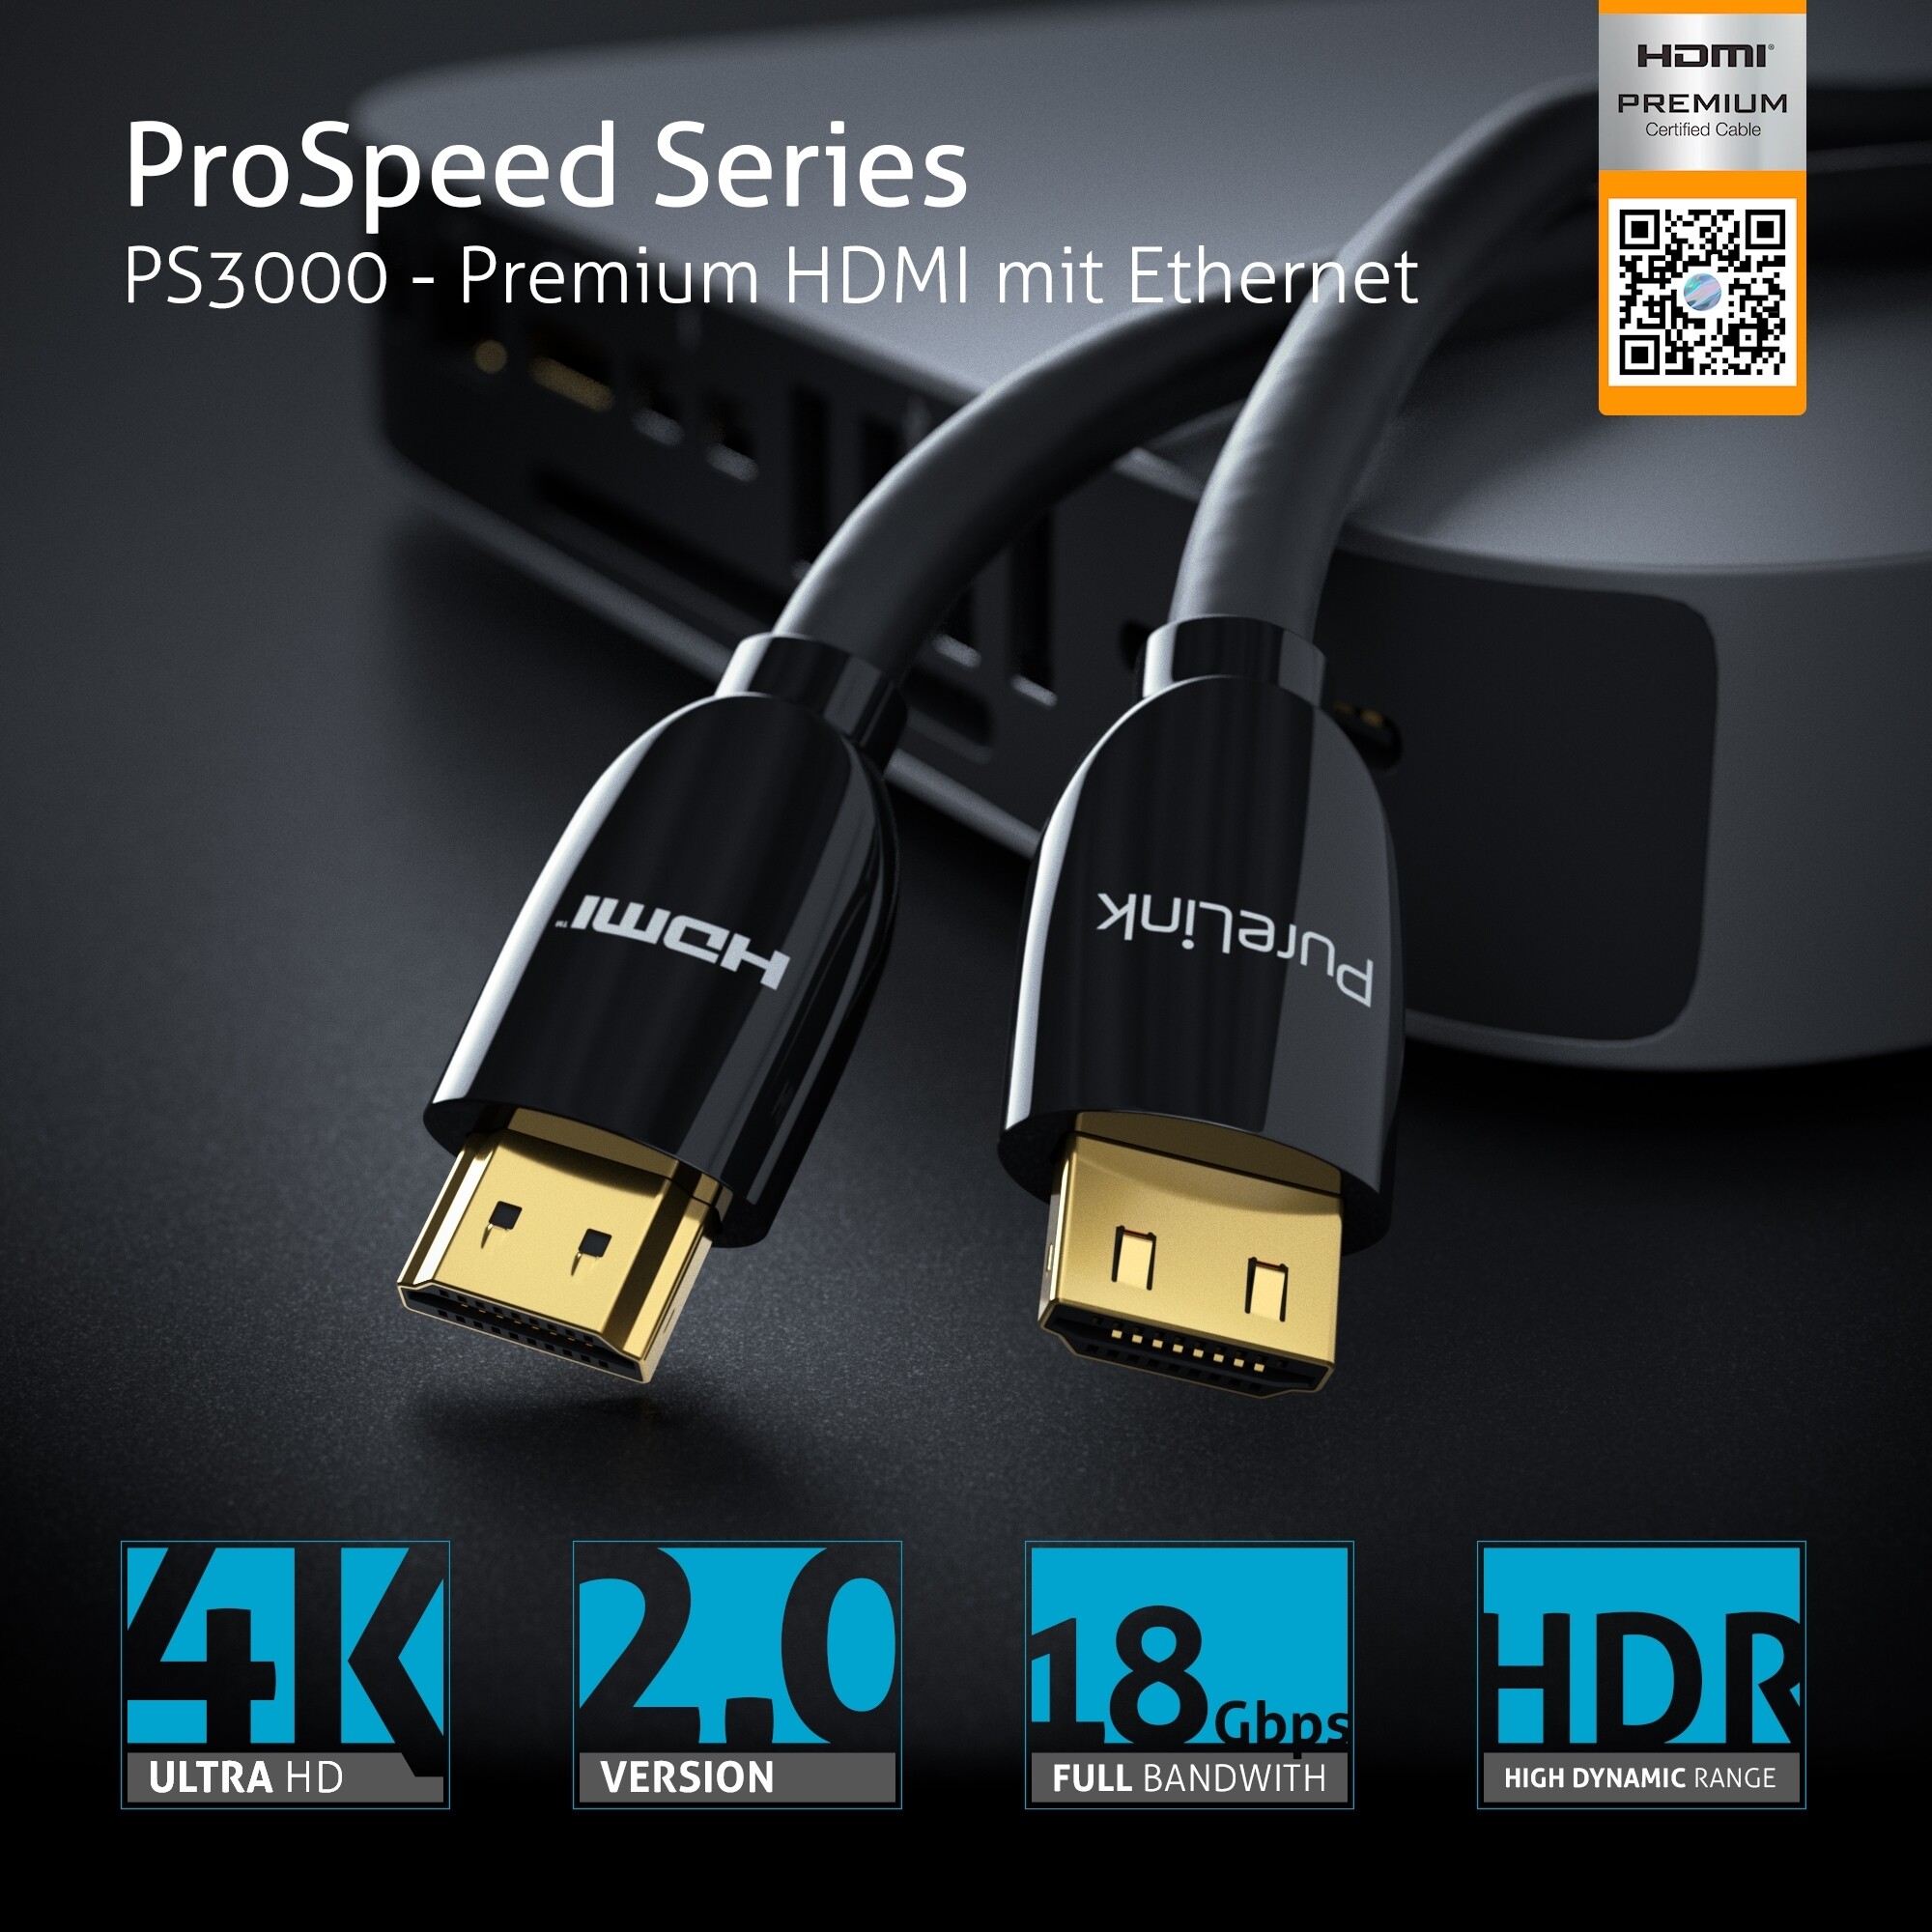 PureLink-PS3000-Premium-Highspeed-HDMI-Kabel-mit-Ethernet-Zertifiziert-1-80m